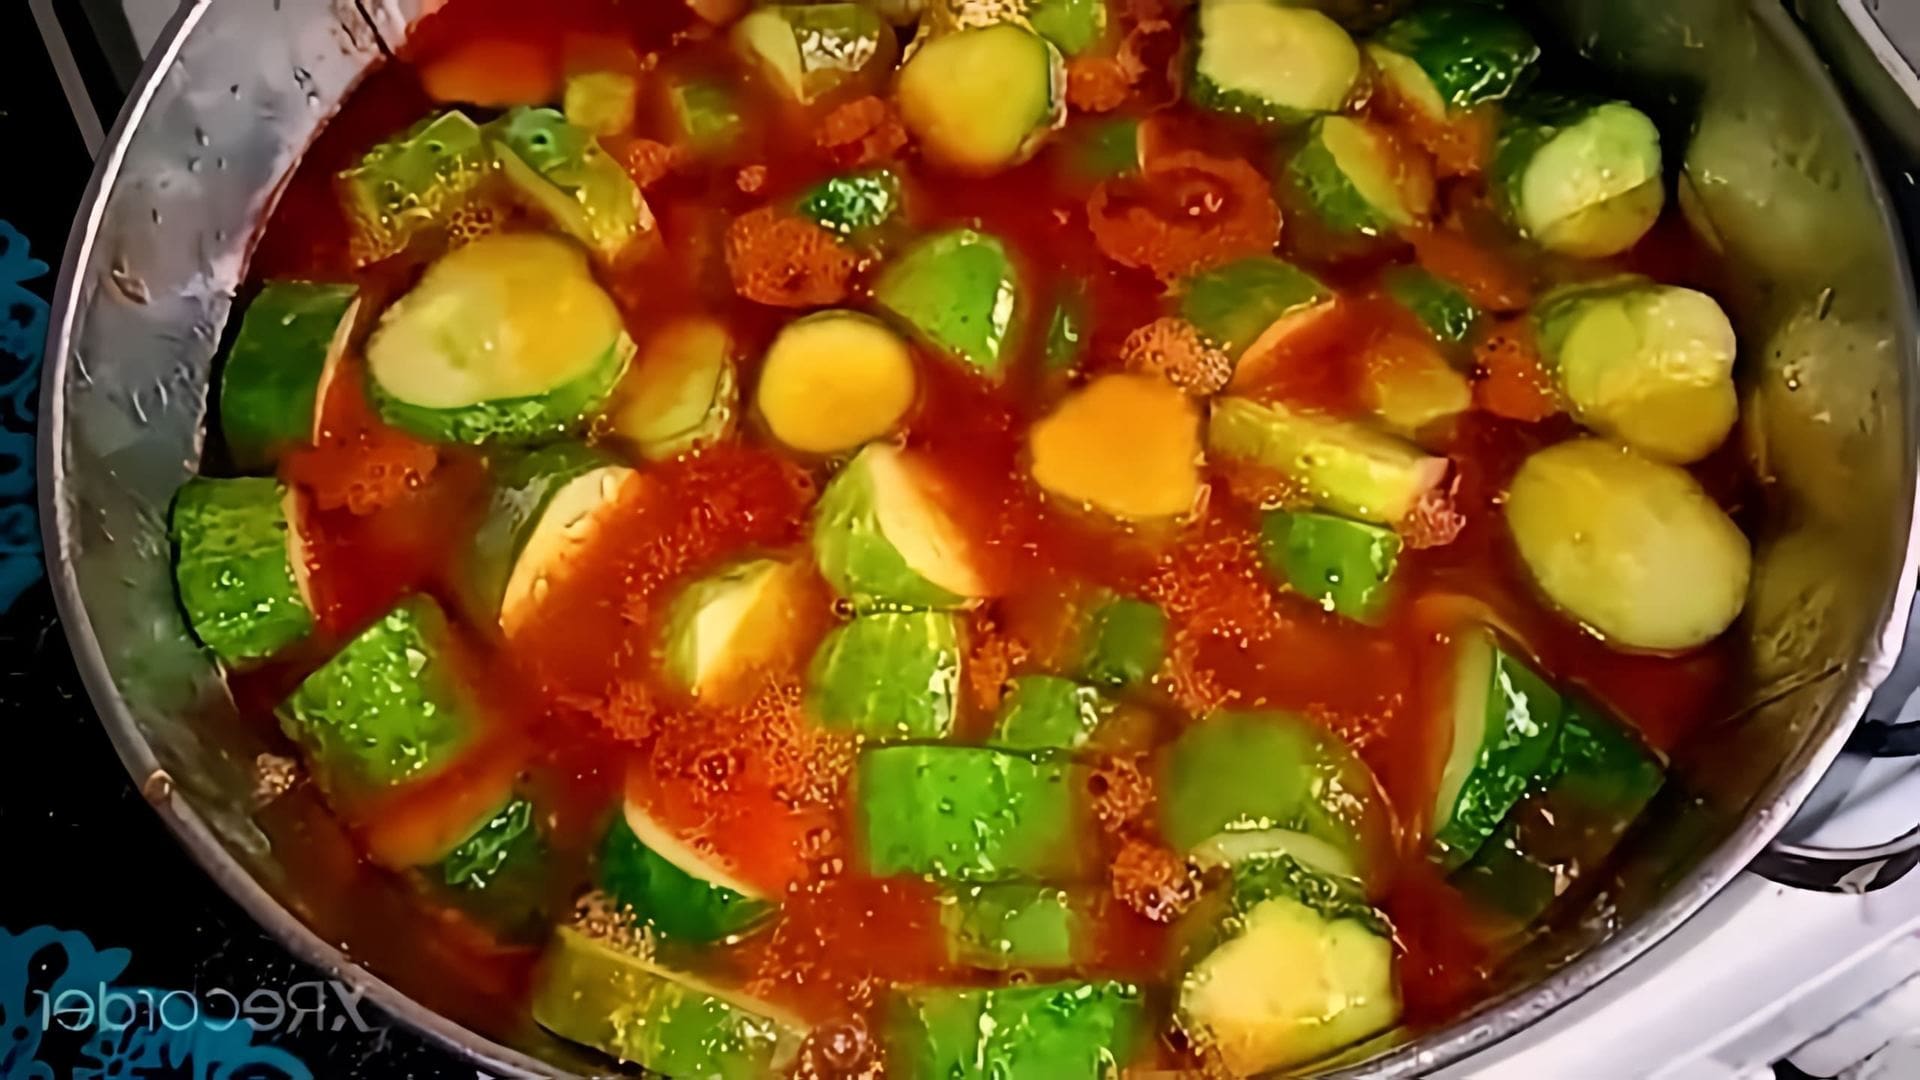 В этом видео демонстрируется рецепт приготовления резаных огурцов в кетчупе "Чили"